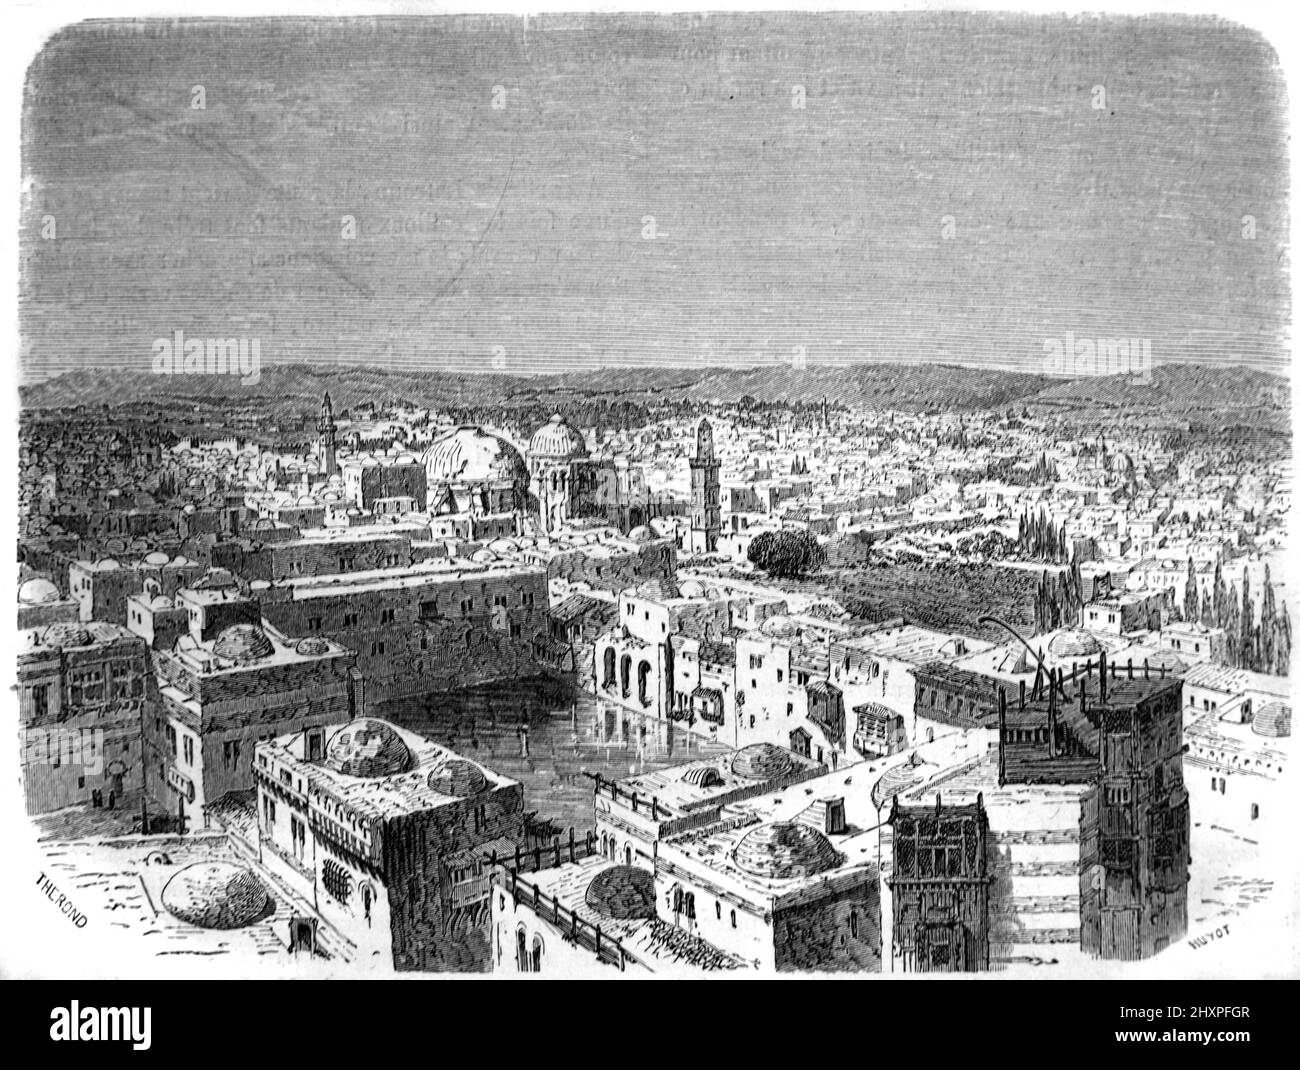 Vista anticipata, vista storica o vista panoramica dei tetti e della città vecchia di Gerusalemme. Illustrazione o incisione vintage 1860. Foto Stock